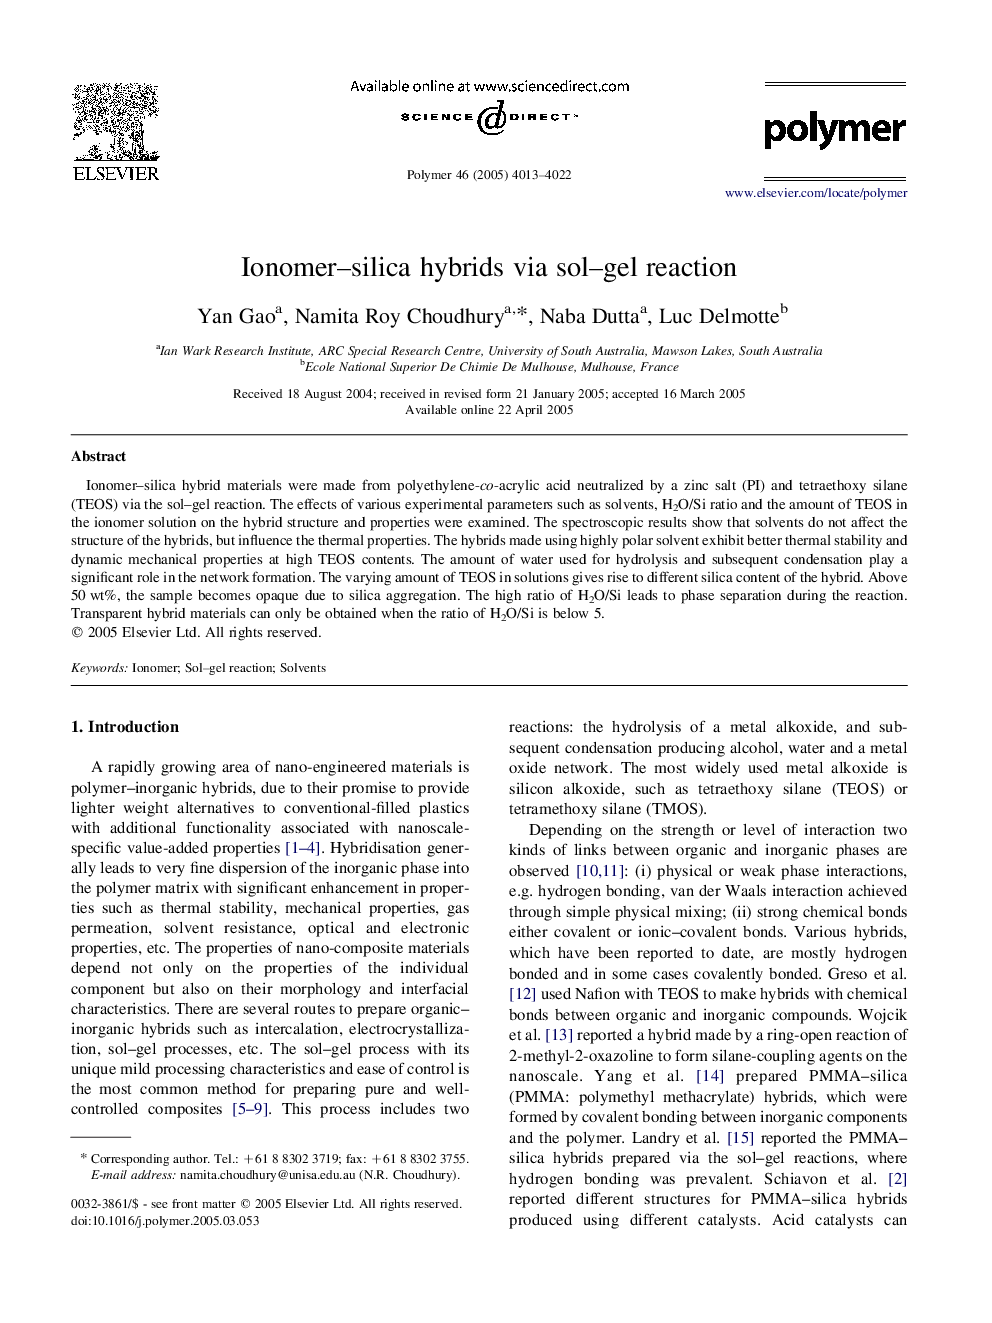 Ionomer-silica hybrids via sol-gel reaction